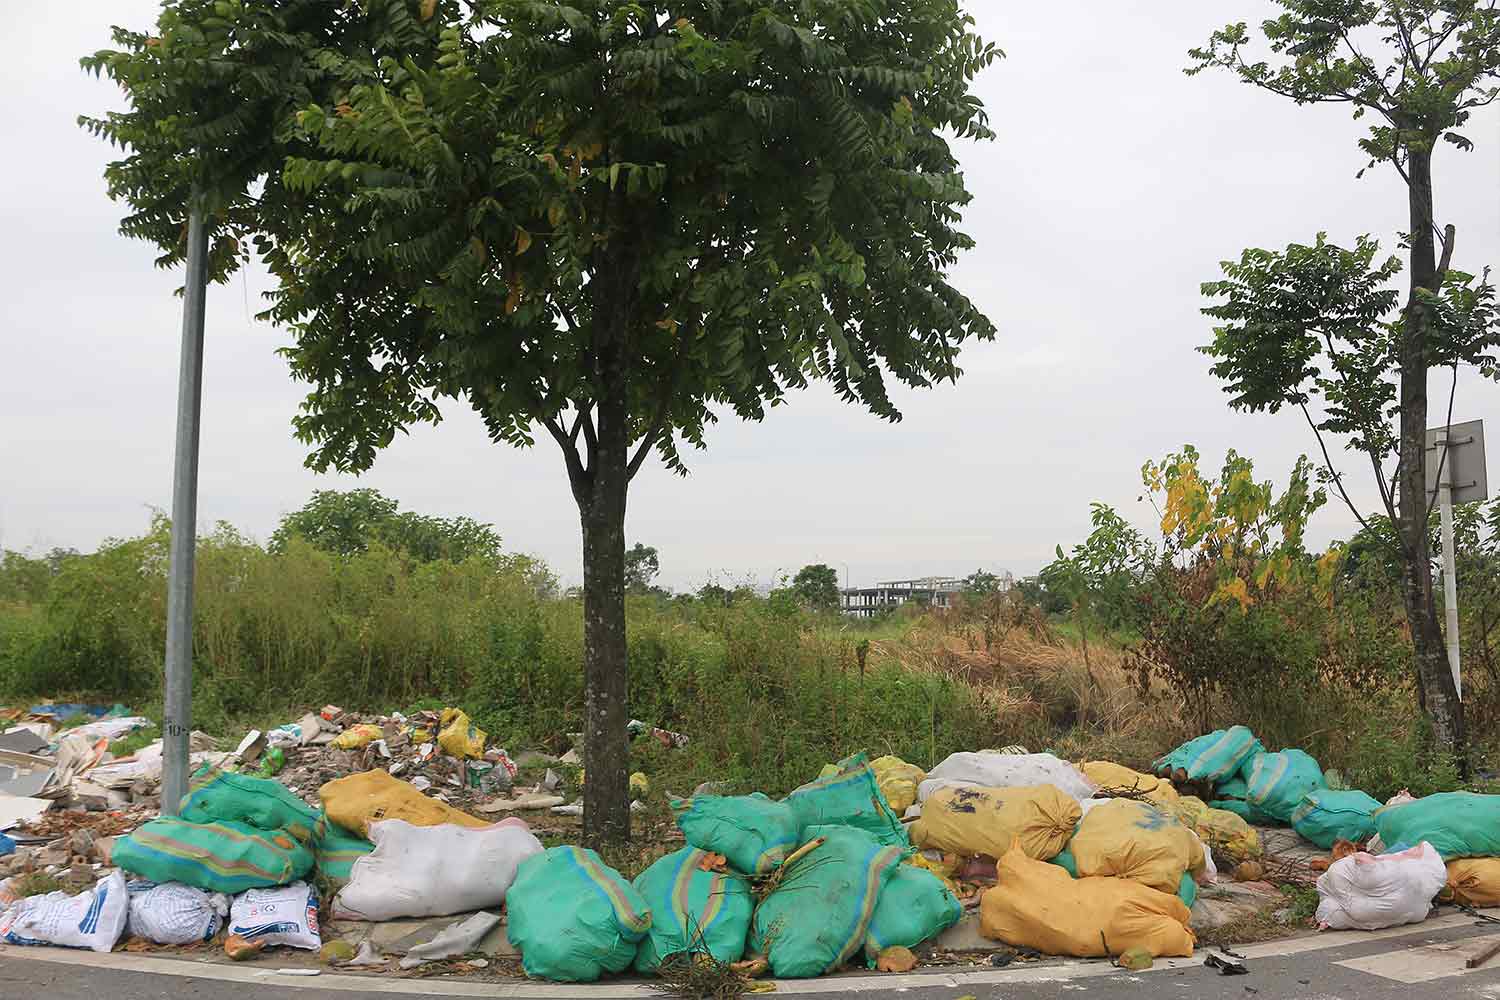 Hàng chục bao tải đựng rác bị vứt tại đây (ảnh chụp ngày 24.10). Ảnh: Khánh An